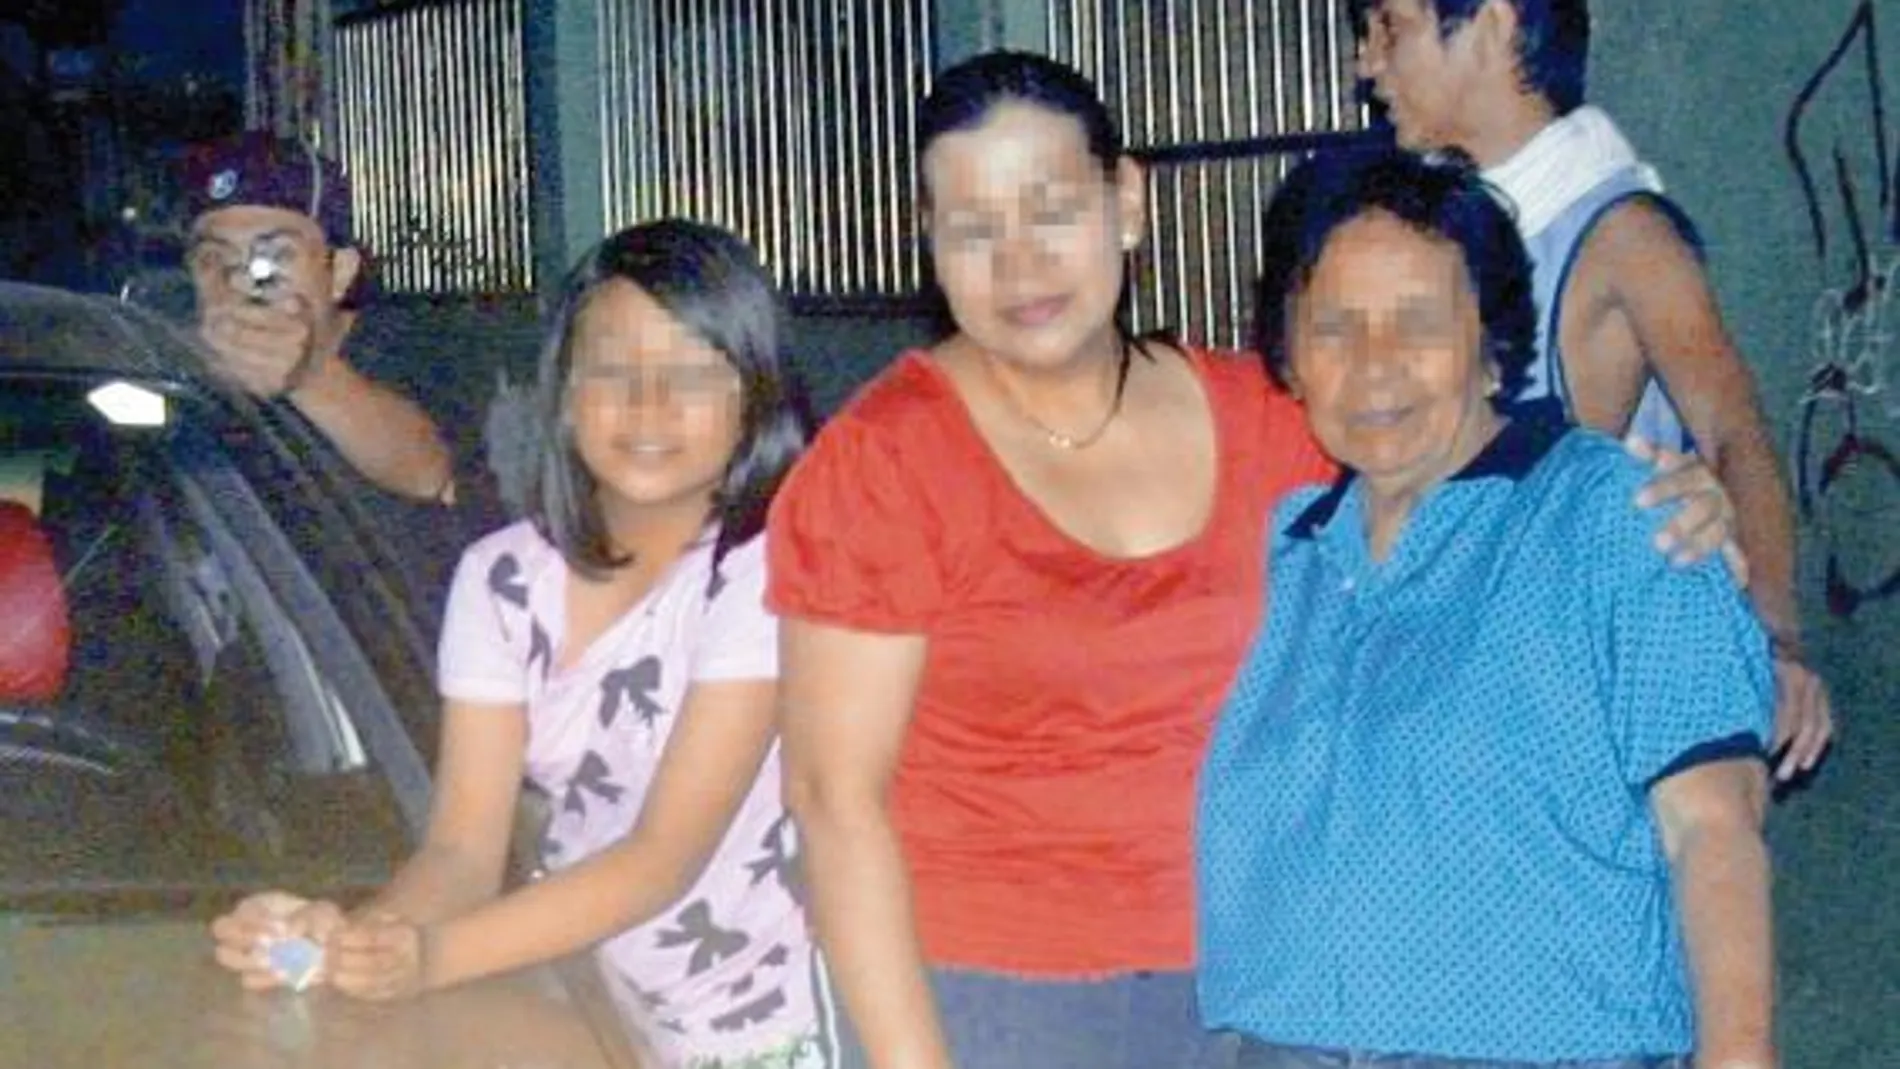 La familia de Reynaldo Dagsa fotografiada al lado del asesino segundos antes de dispararle